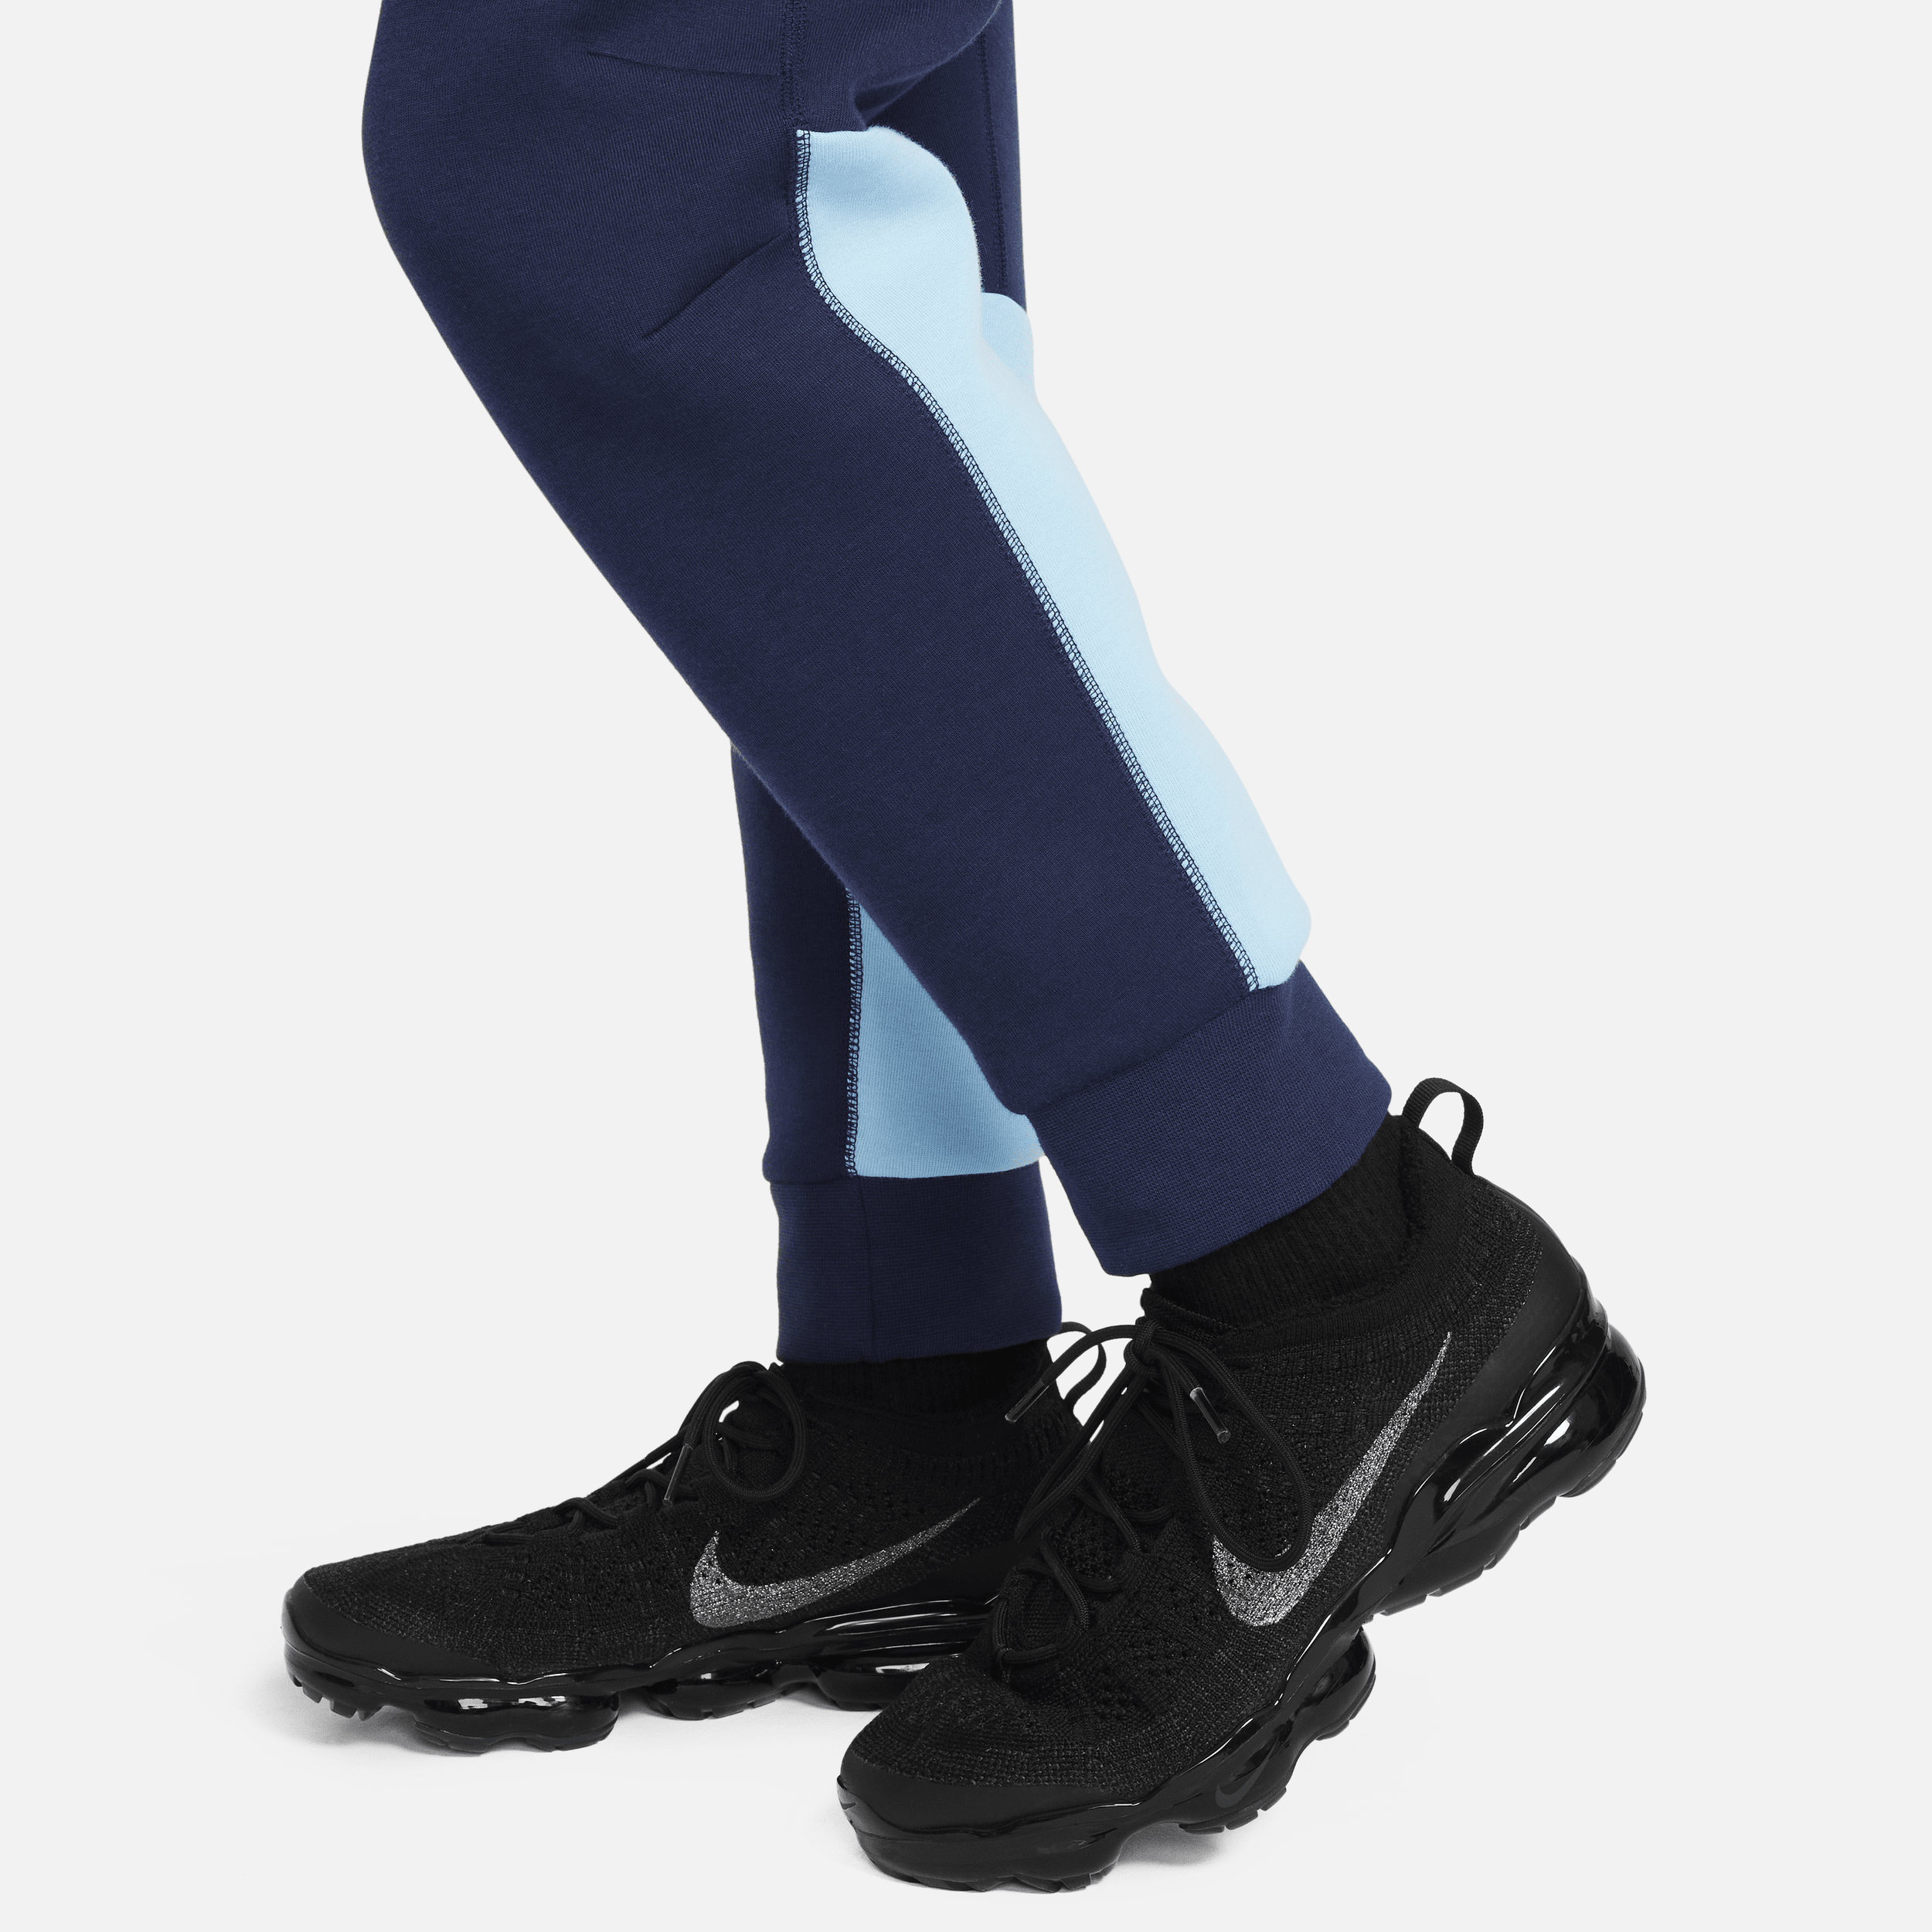 Nike Sportswear Tech Fleece jongensbroek Blauw